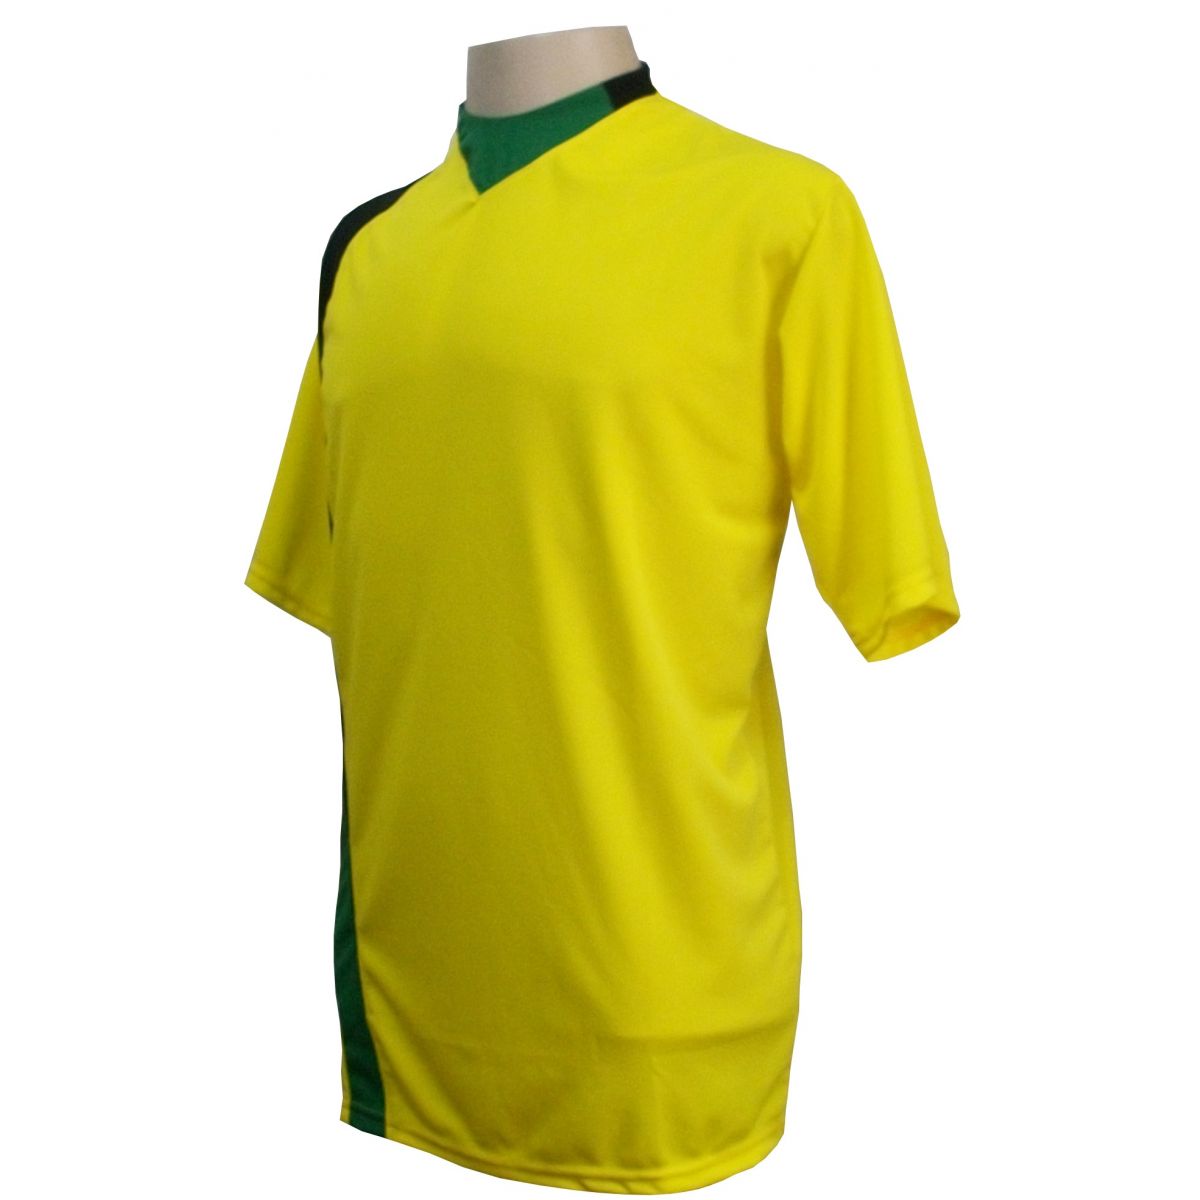 Uniforme Esportivo com 14 camisas modelo PSG Amarelo/Preto/Verde + 14 calções modelo Madrid + 1 Goleiro + Brindes